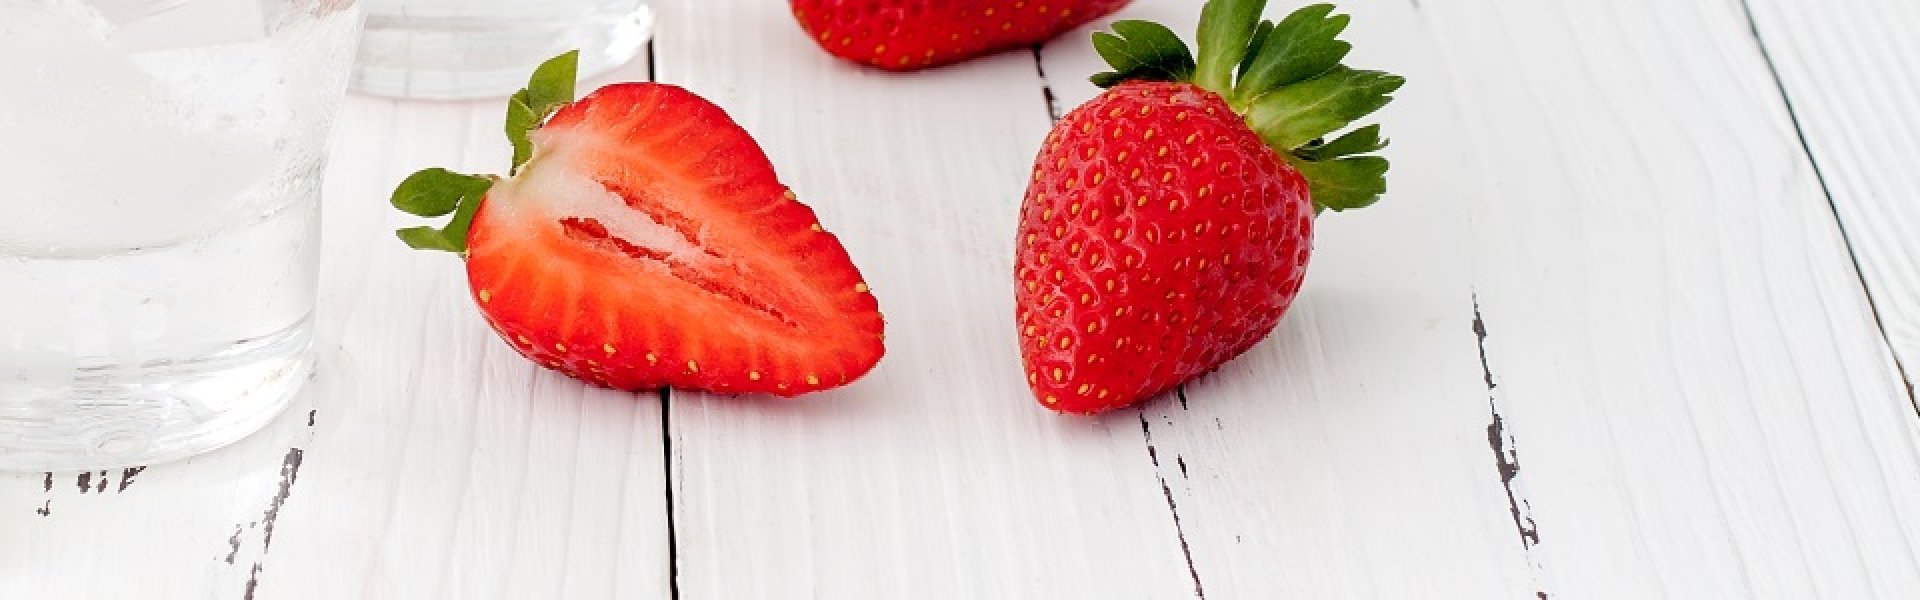 Maak je eigen Tomorrowland-smoothie met aardbeien